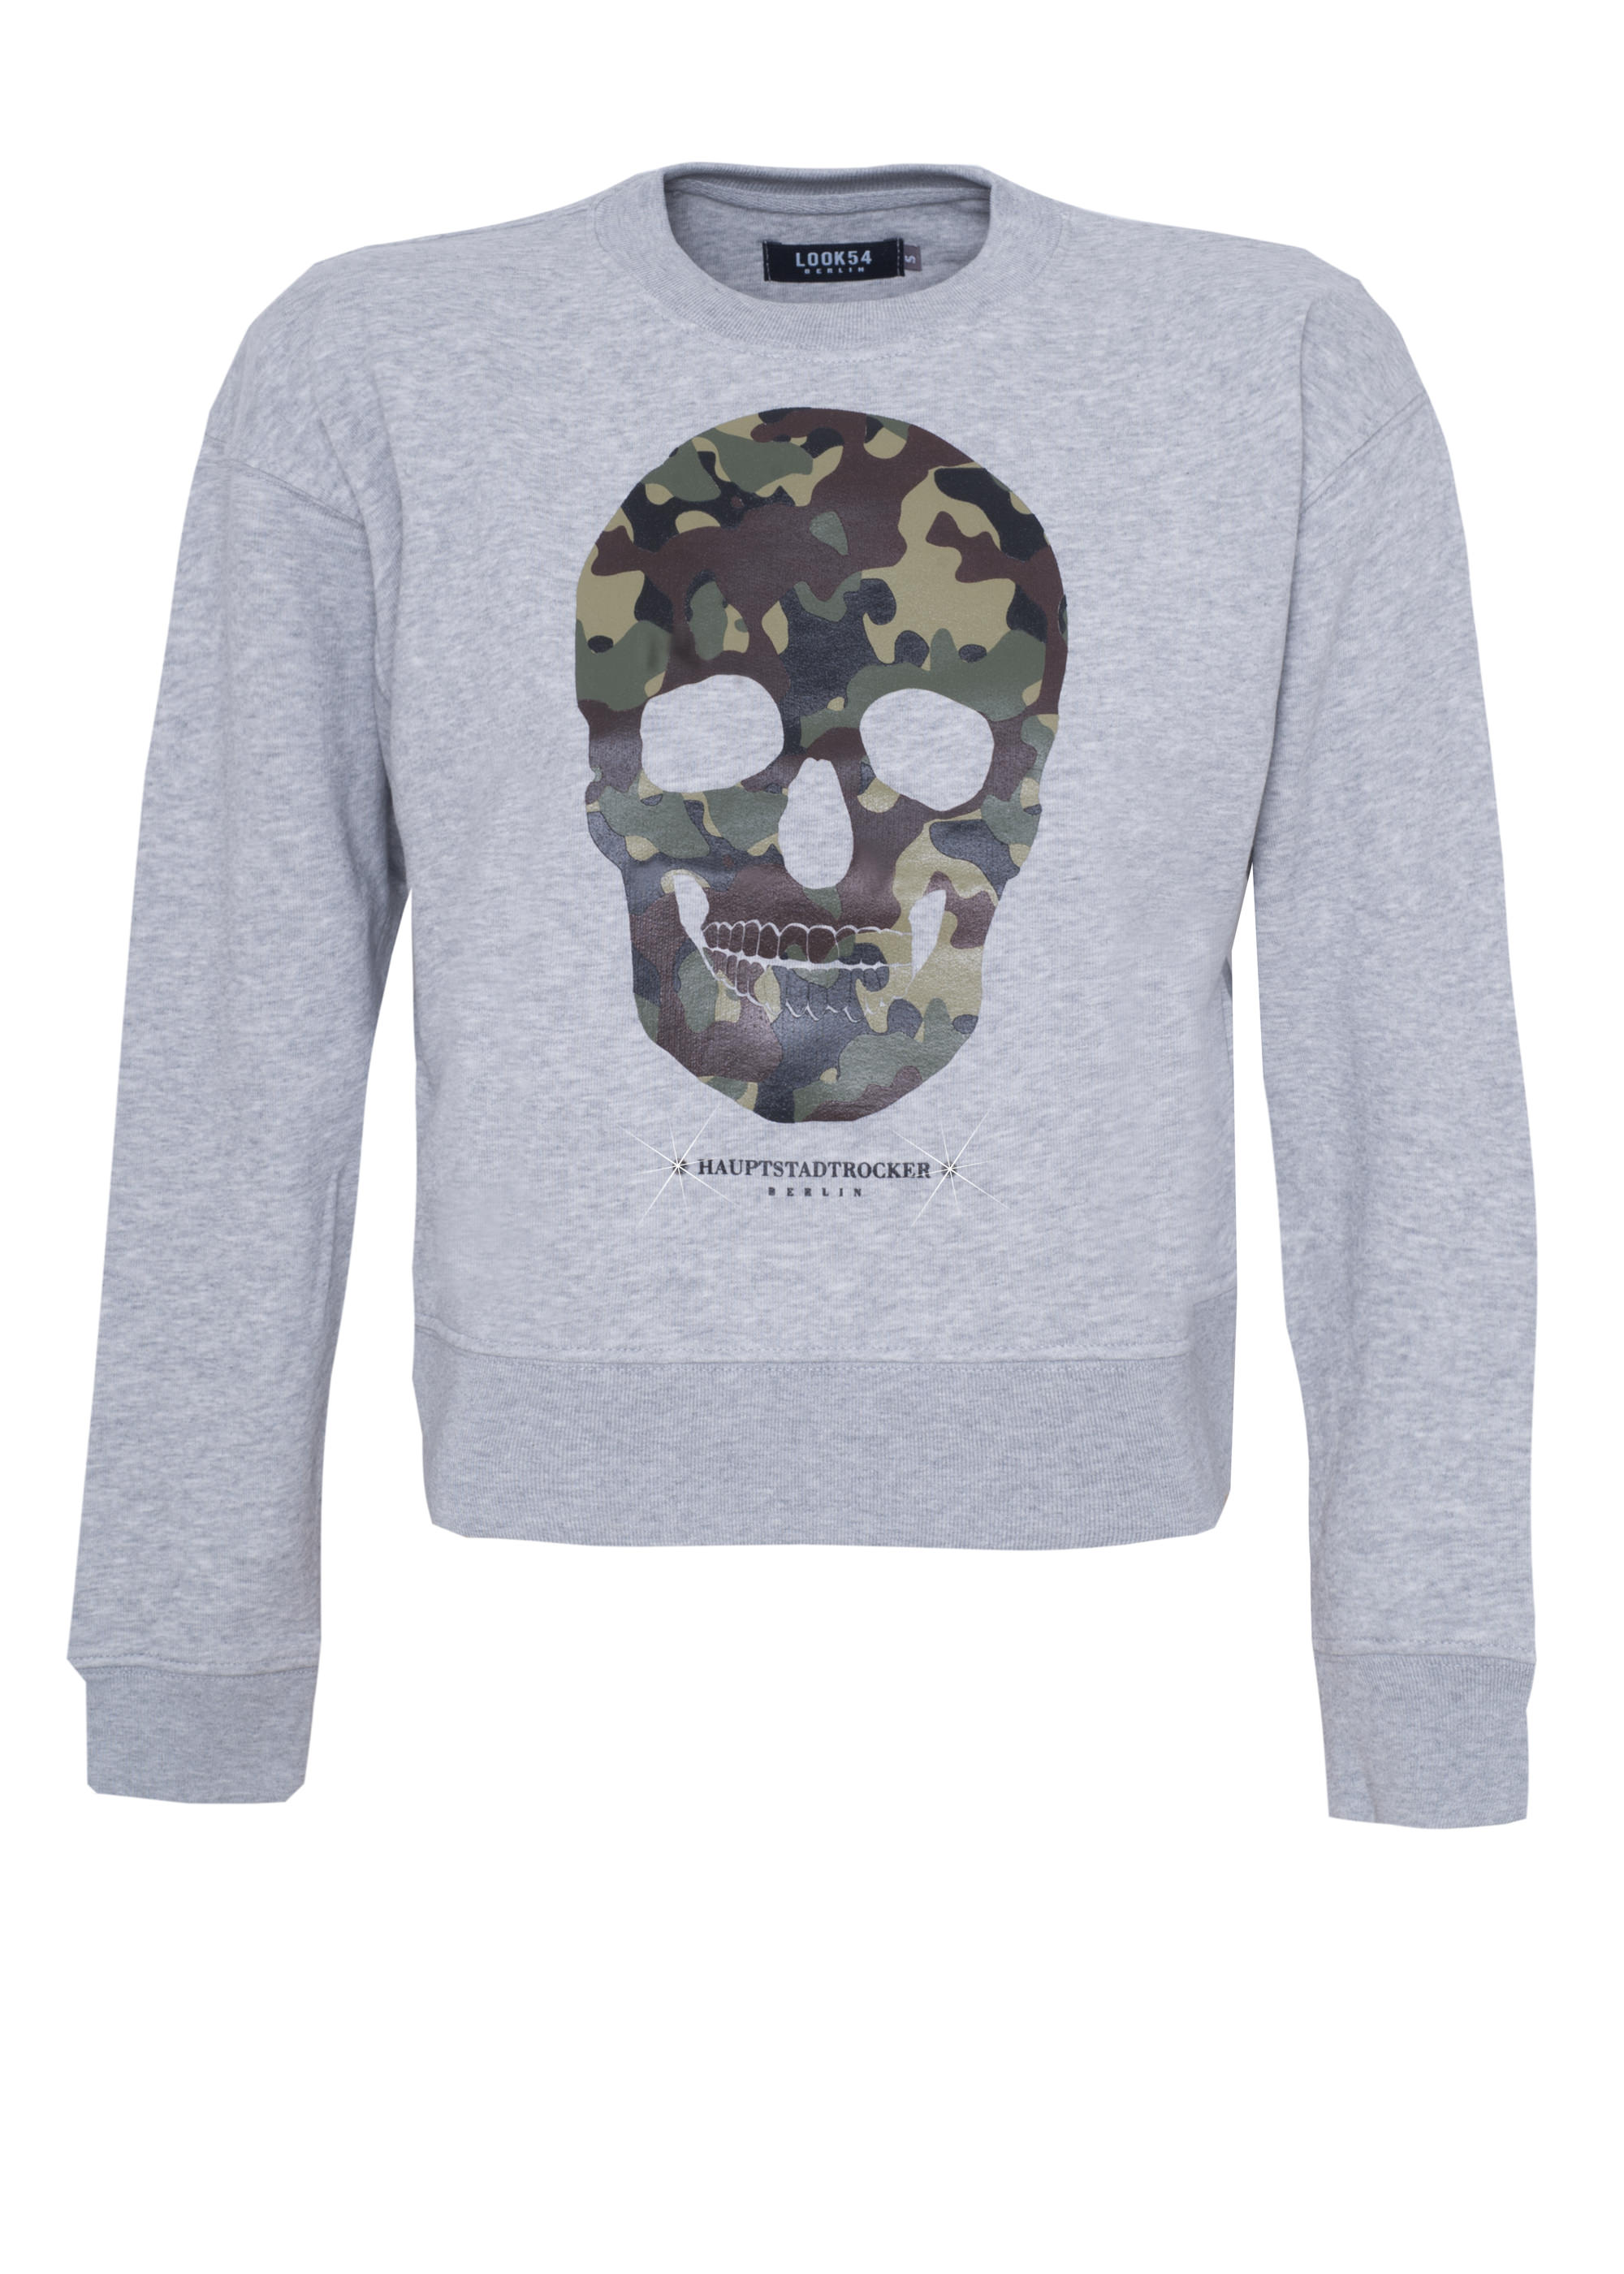 HAUPTSTADTROCKER Camouflage Skull Crop Sweater